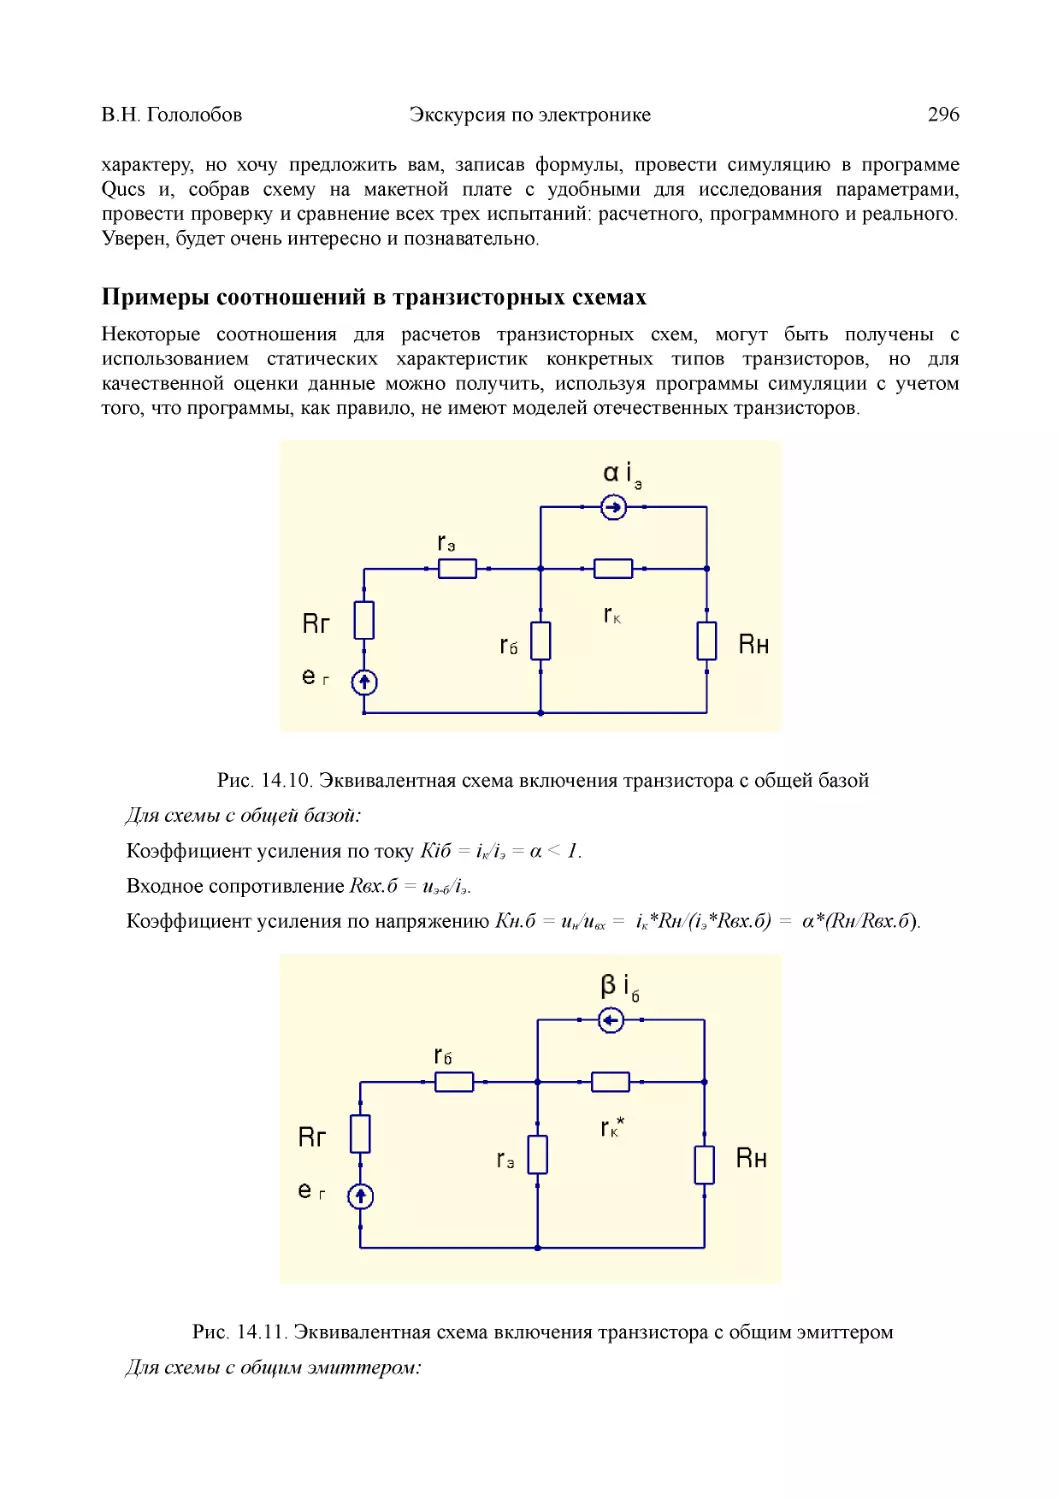 ﻿Примеры соотношений в транзисторных схема